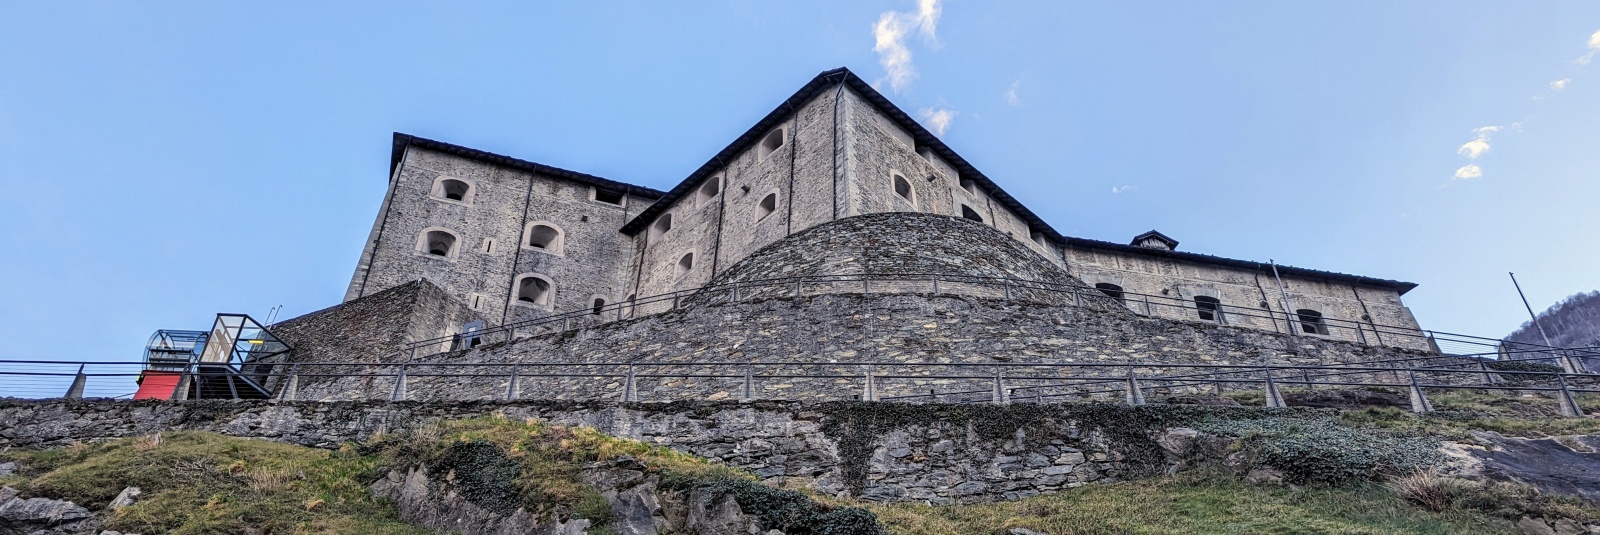 Vizită la cetatea Forte di Bard din Valea Aosta